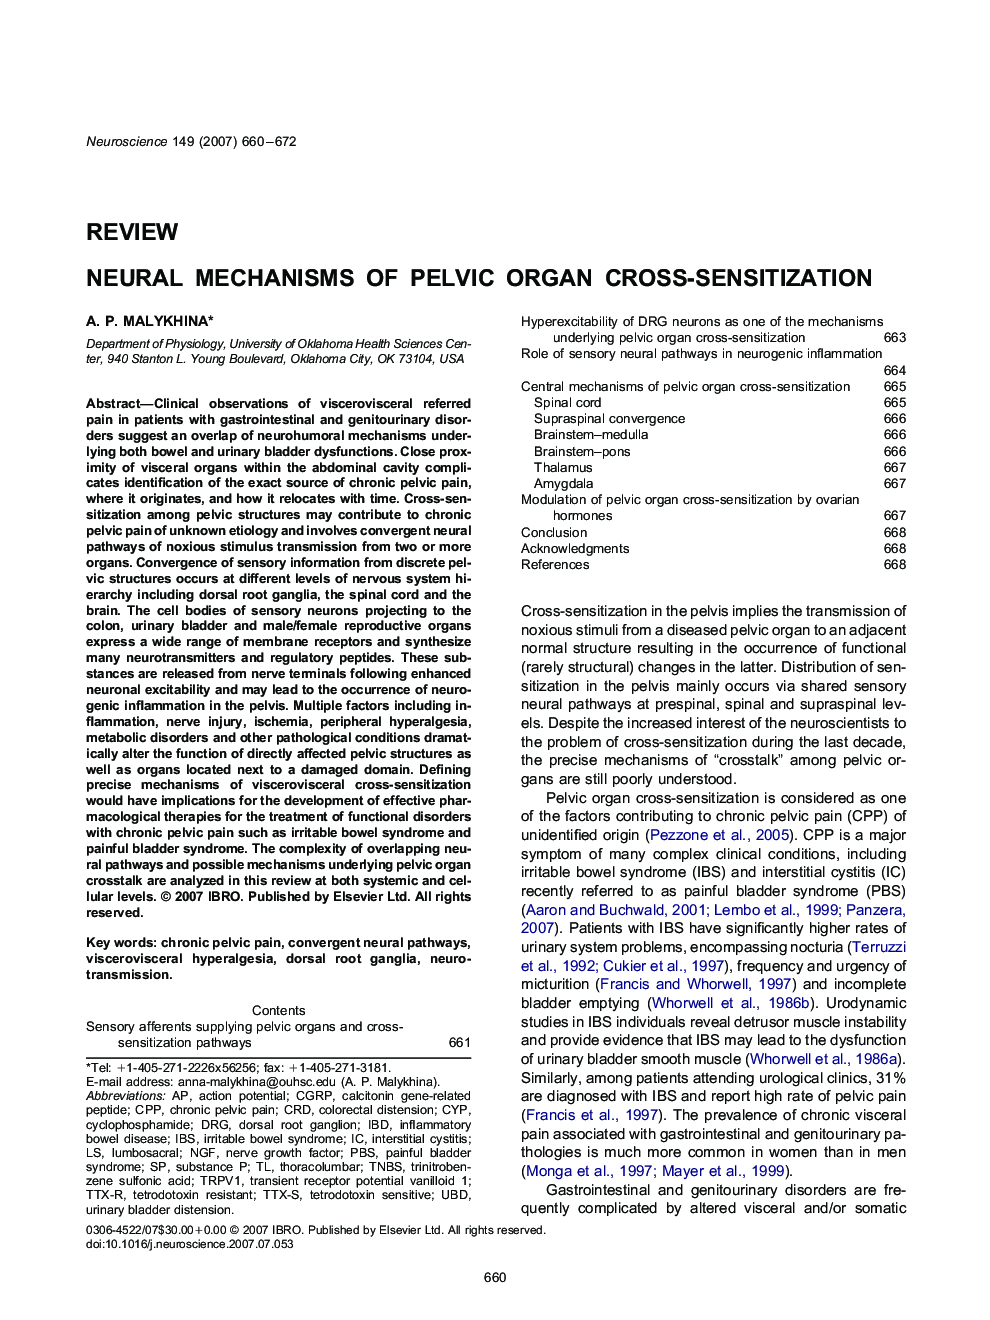 Neural mechanisms of pelvic organ cross-sensitization